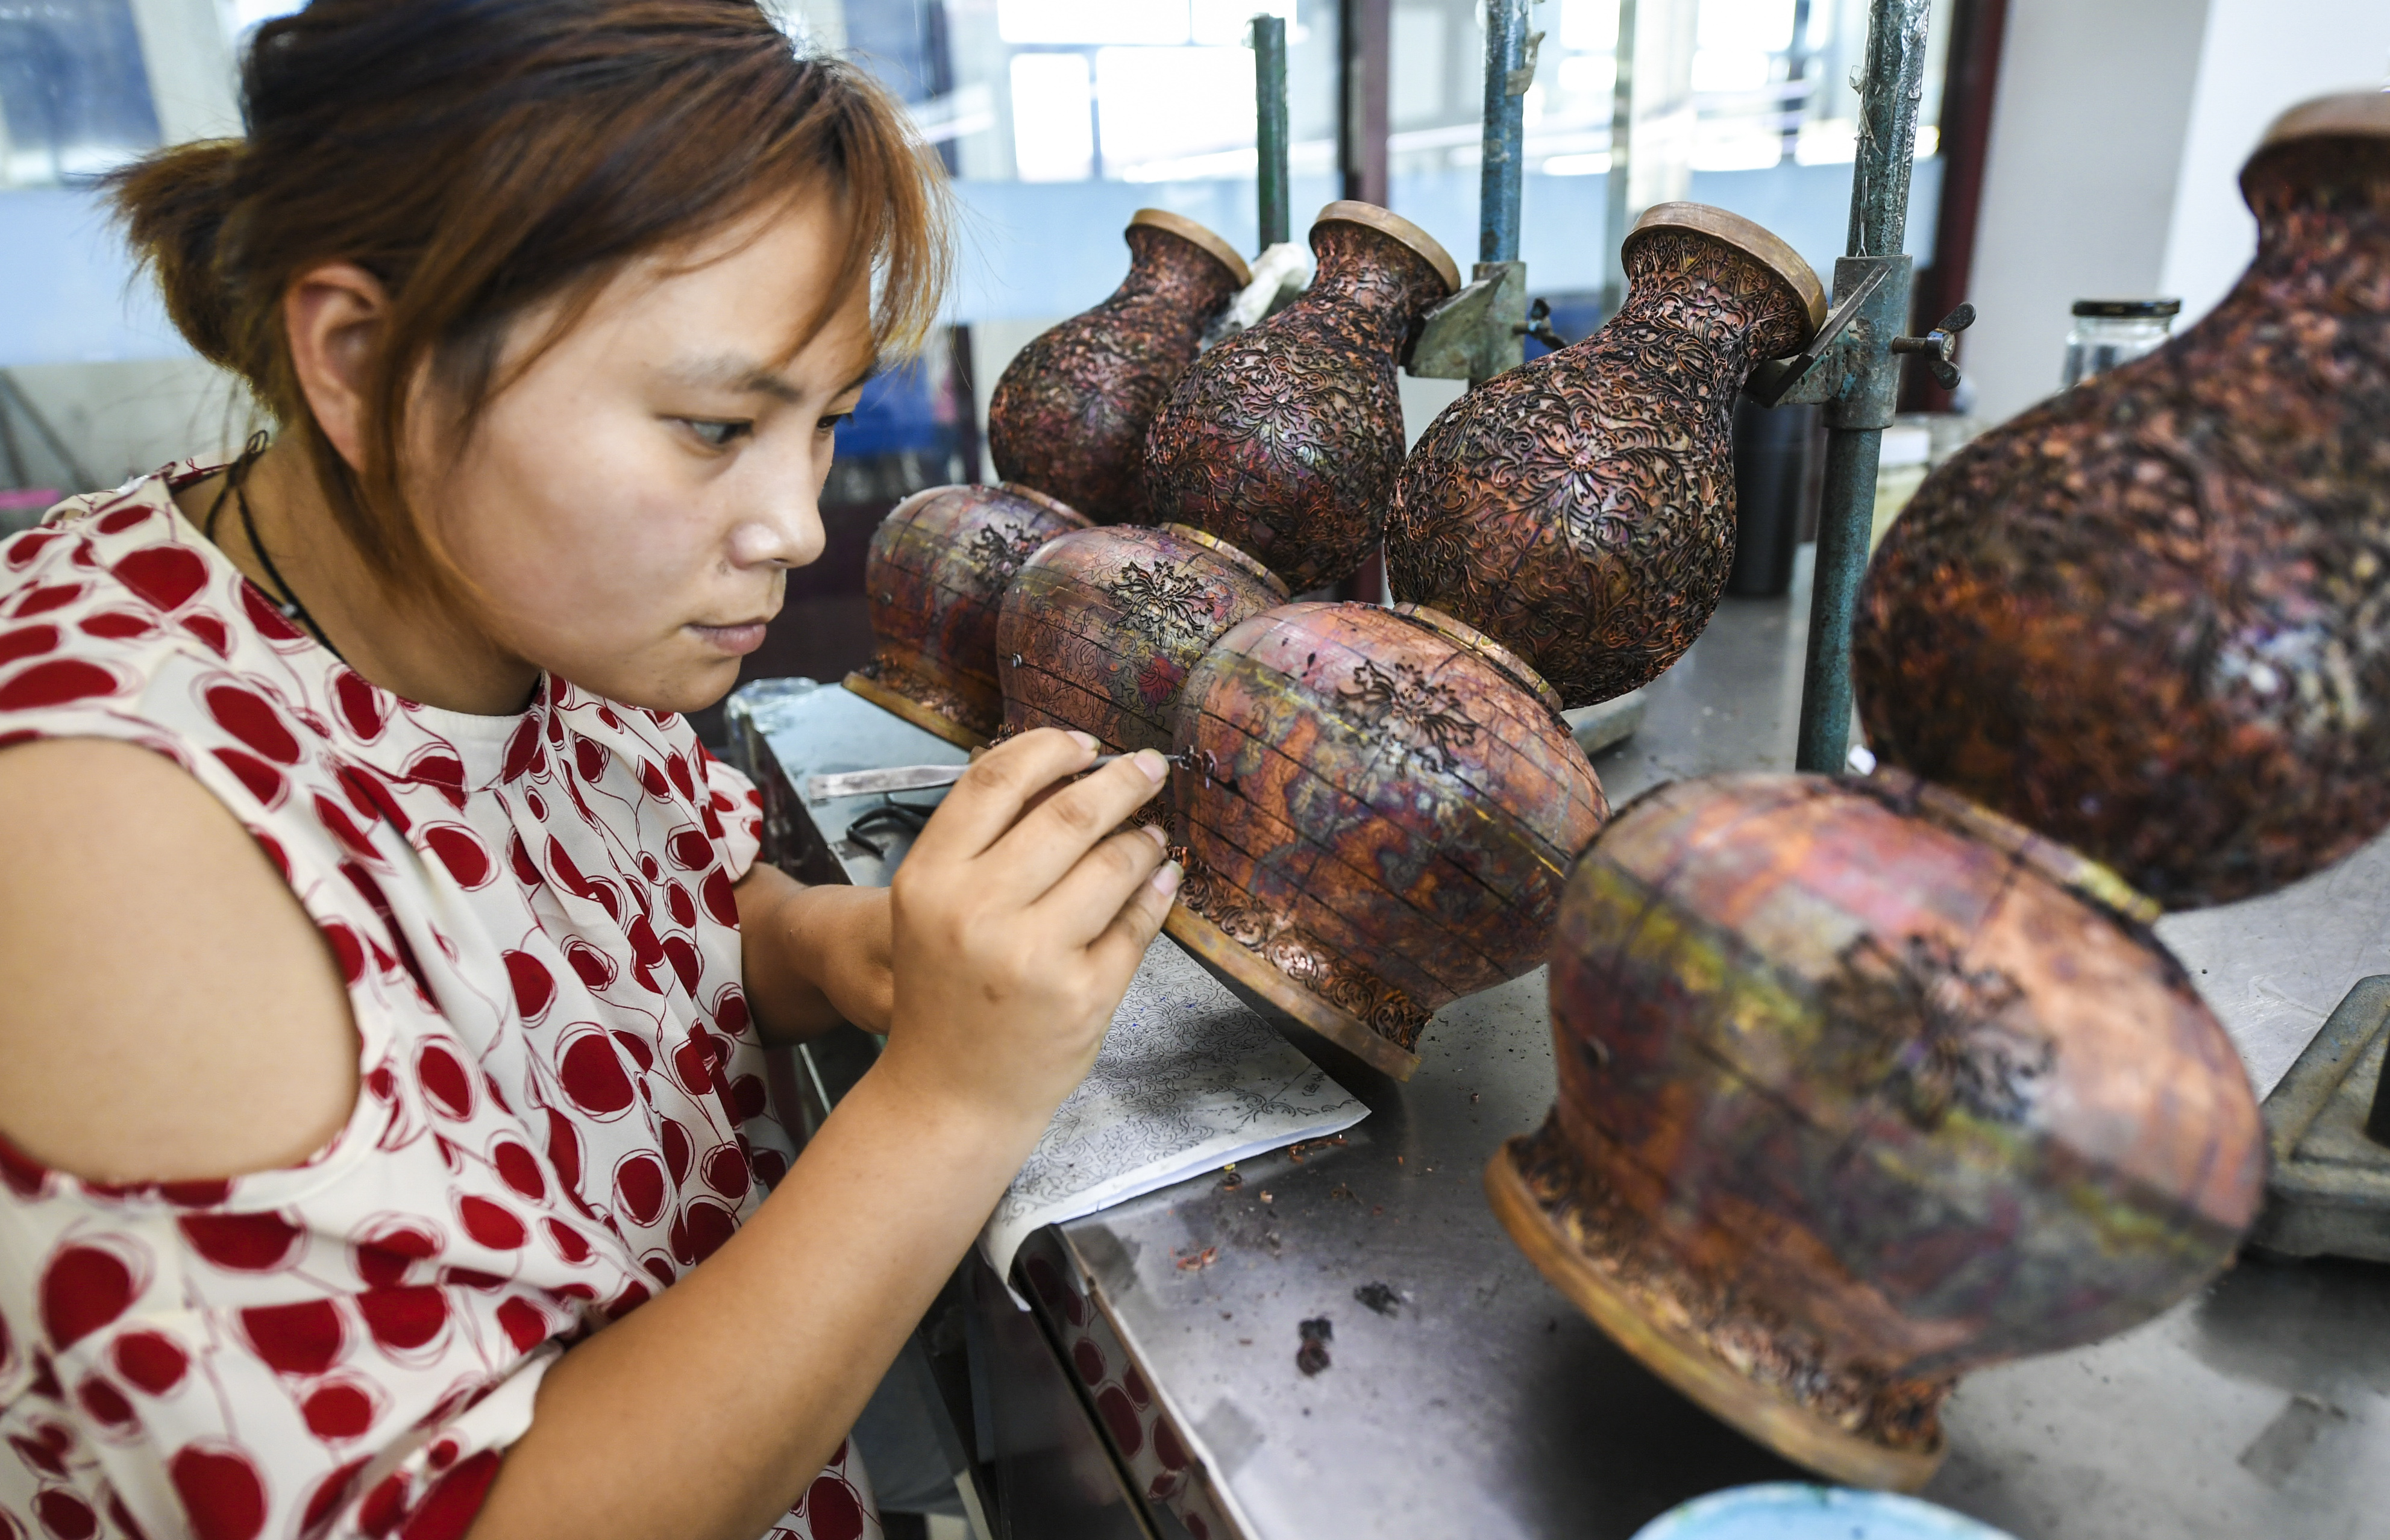 7月3日,河北省饶阳县一家景泰蓝工艺品厂工人在为景泰蓝掐丝